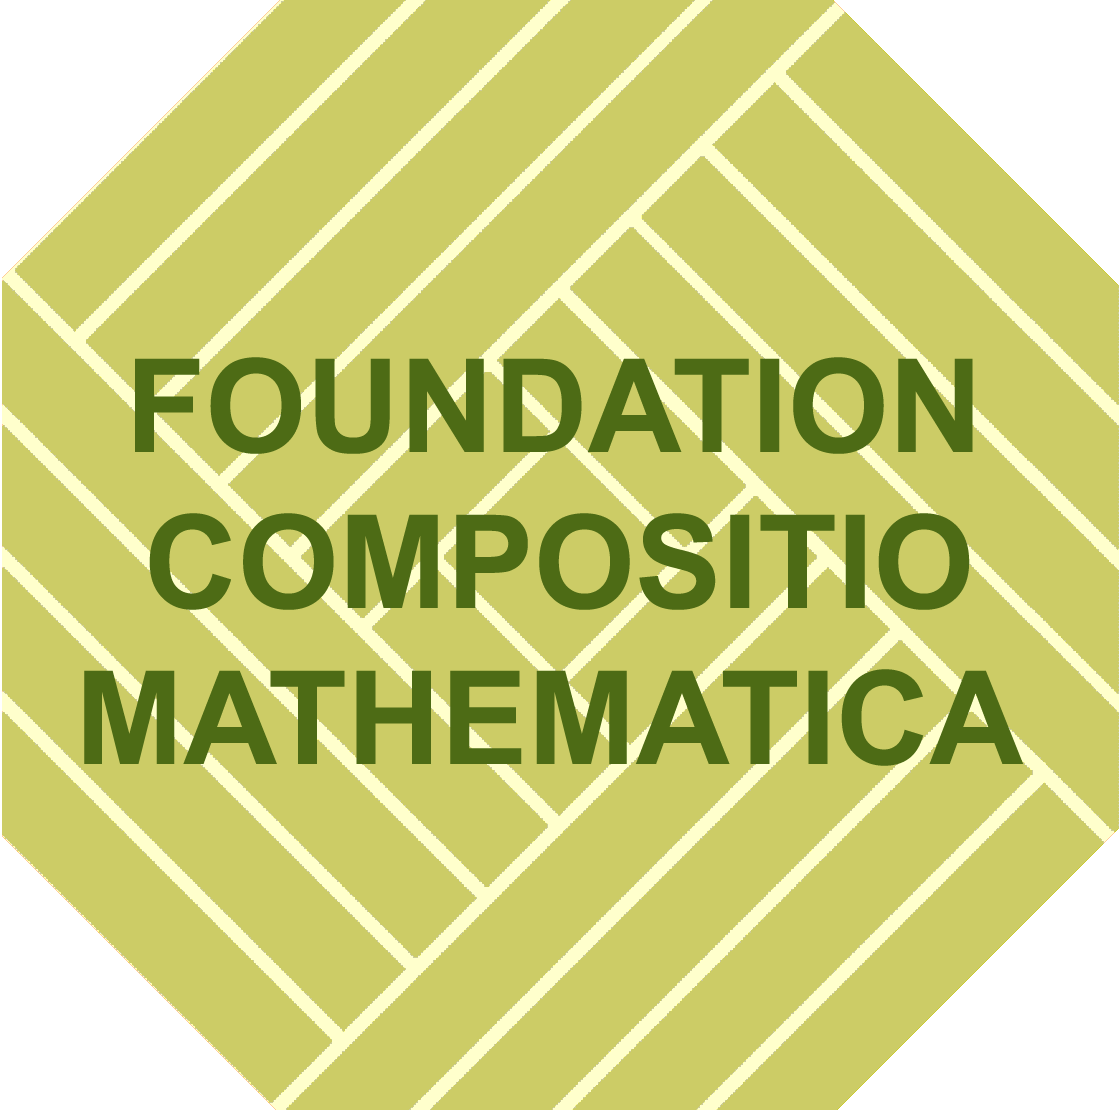 Foundation Comopsitio Mathematica